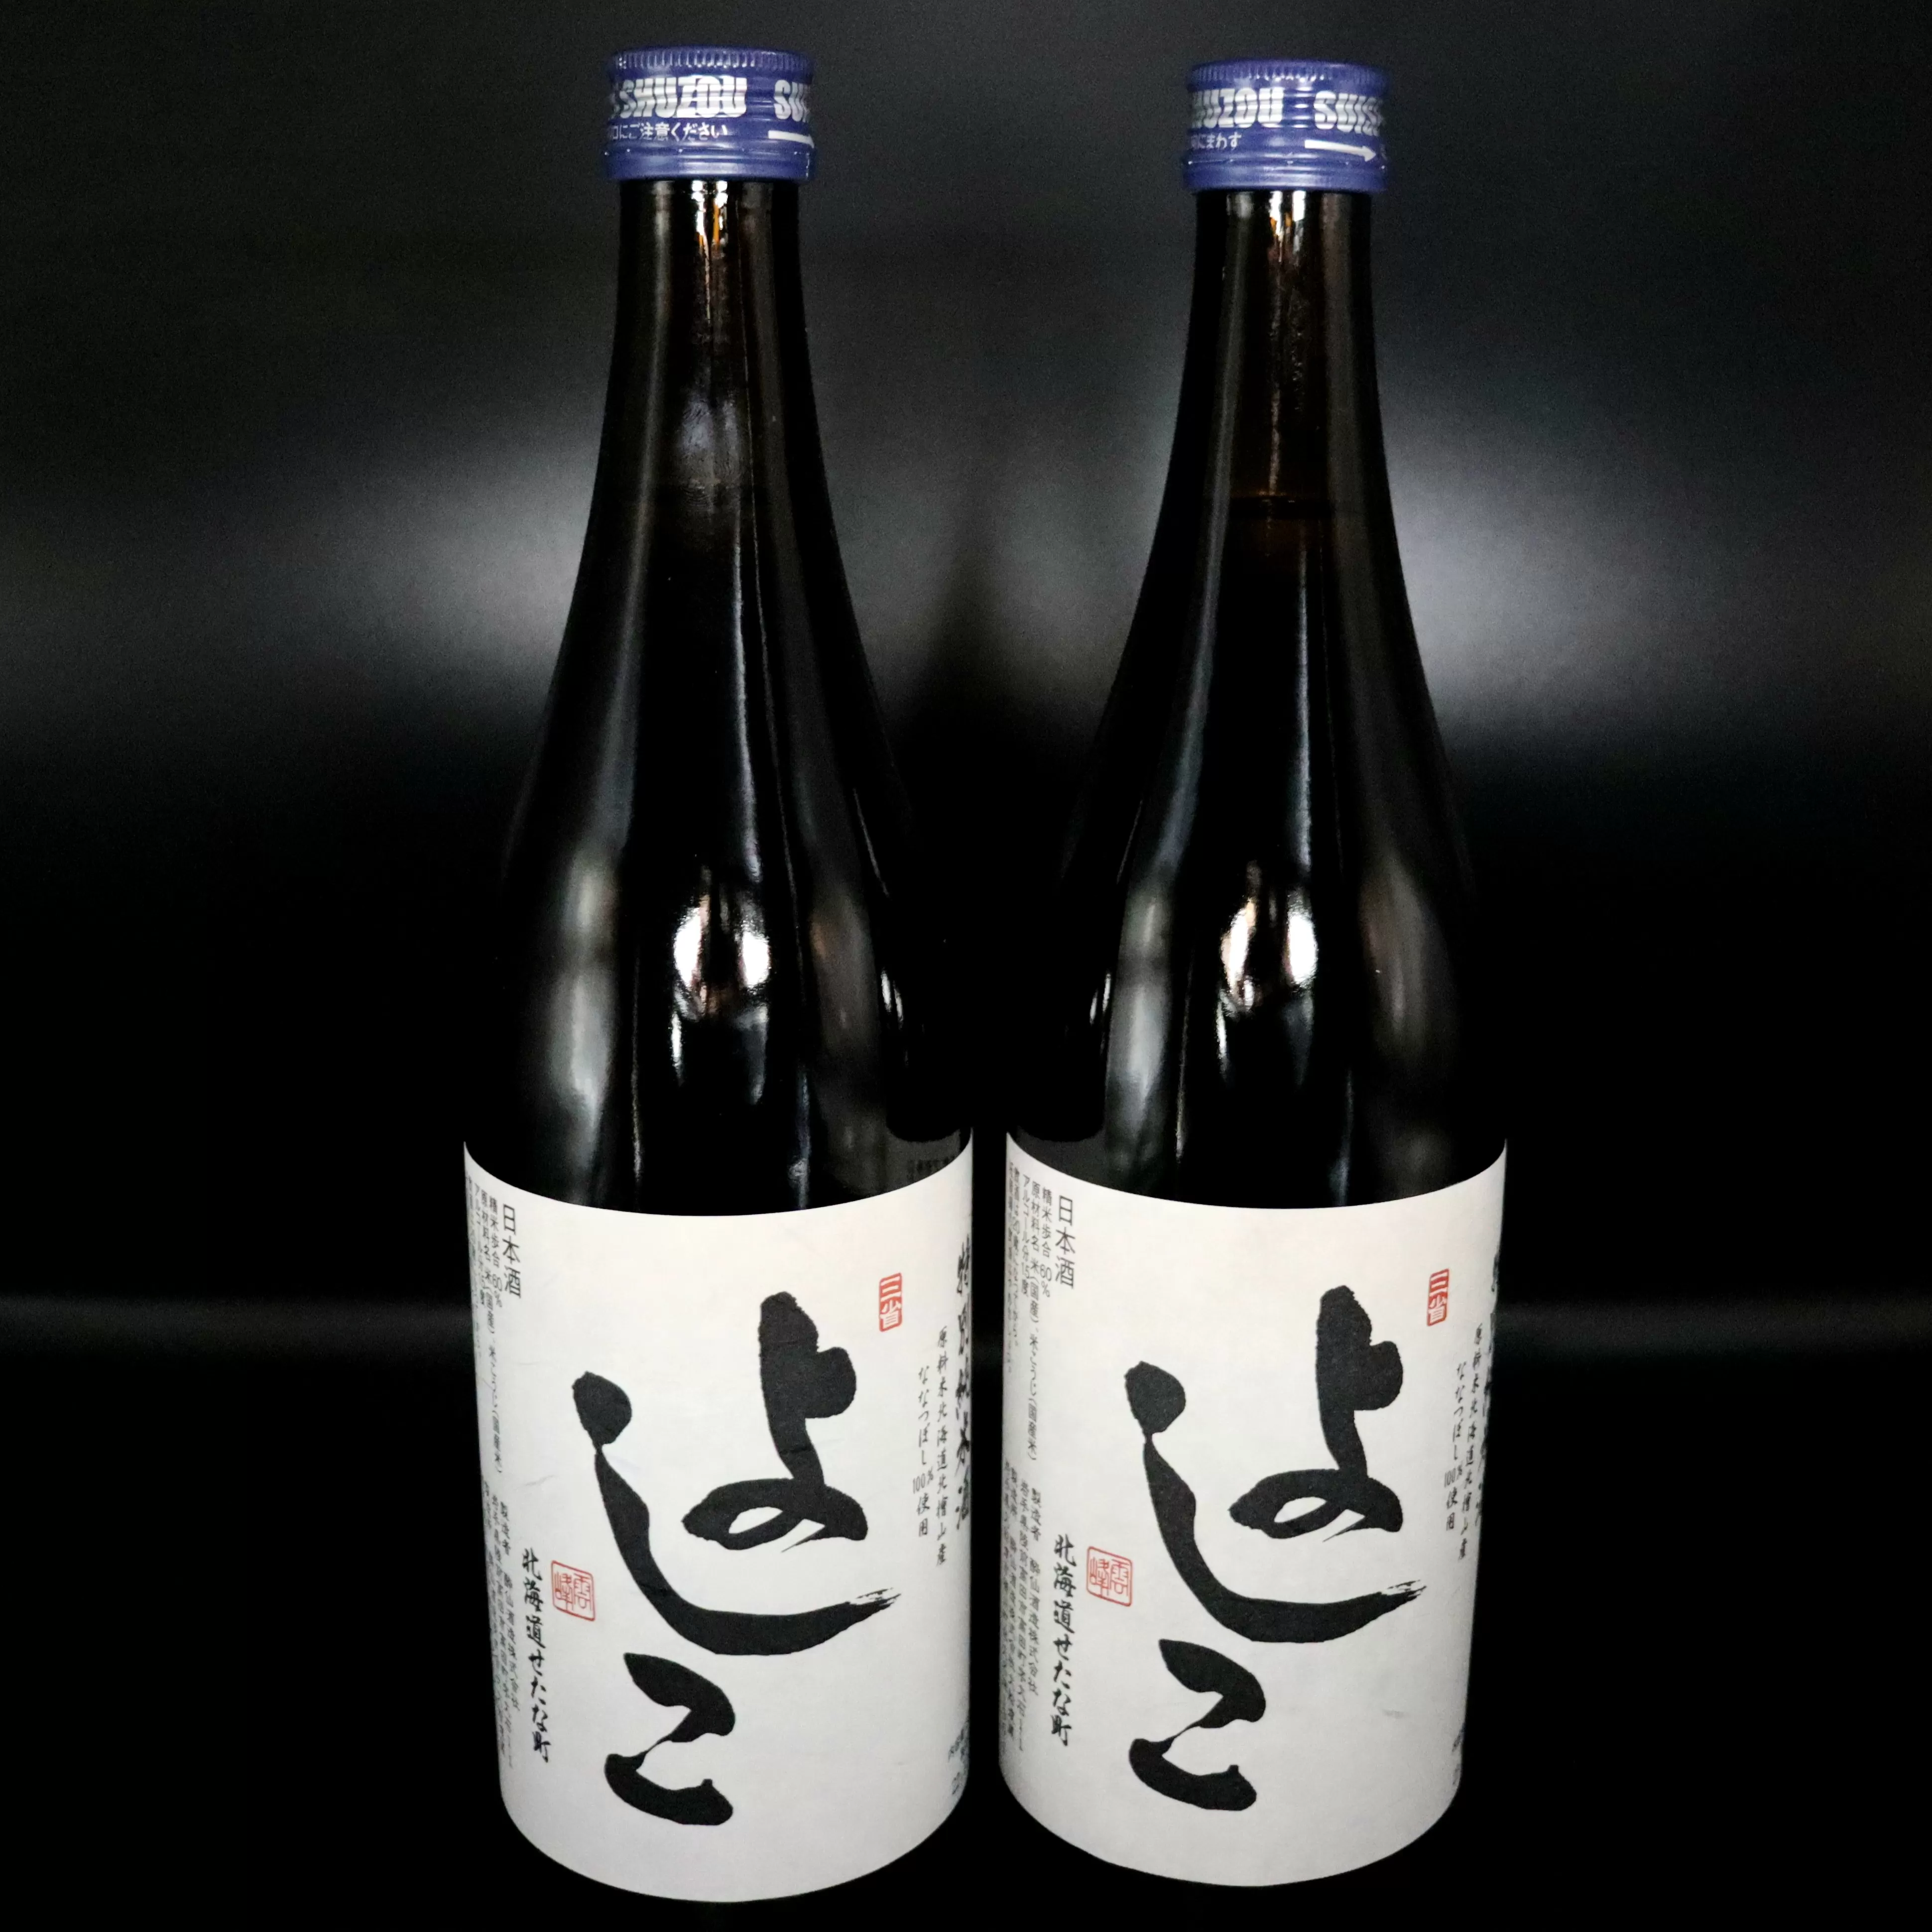 「よしこ」特別純米酒(720ml×2本)セット　北海道産「ななつぼし」100%使用の日本酒